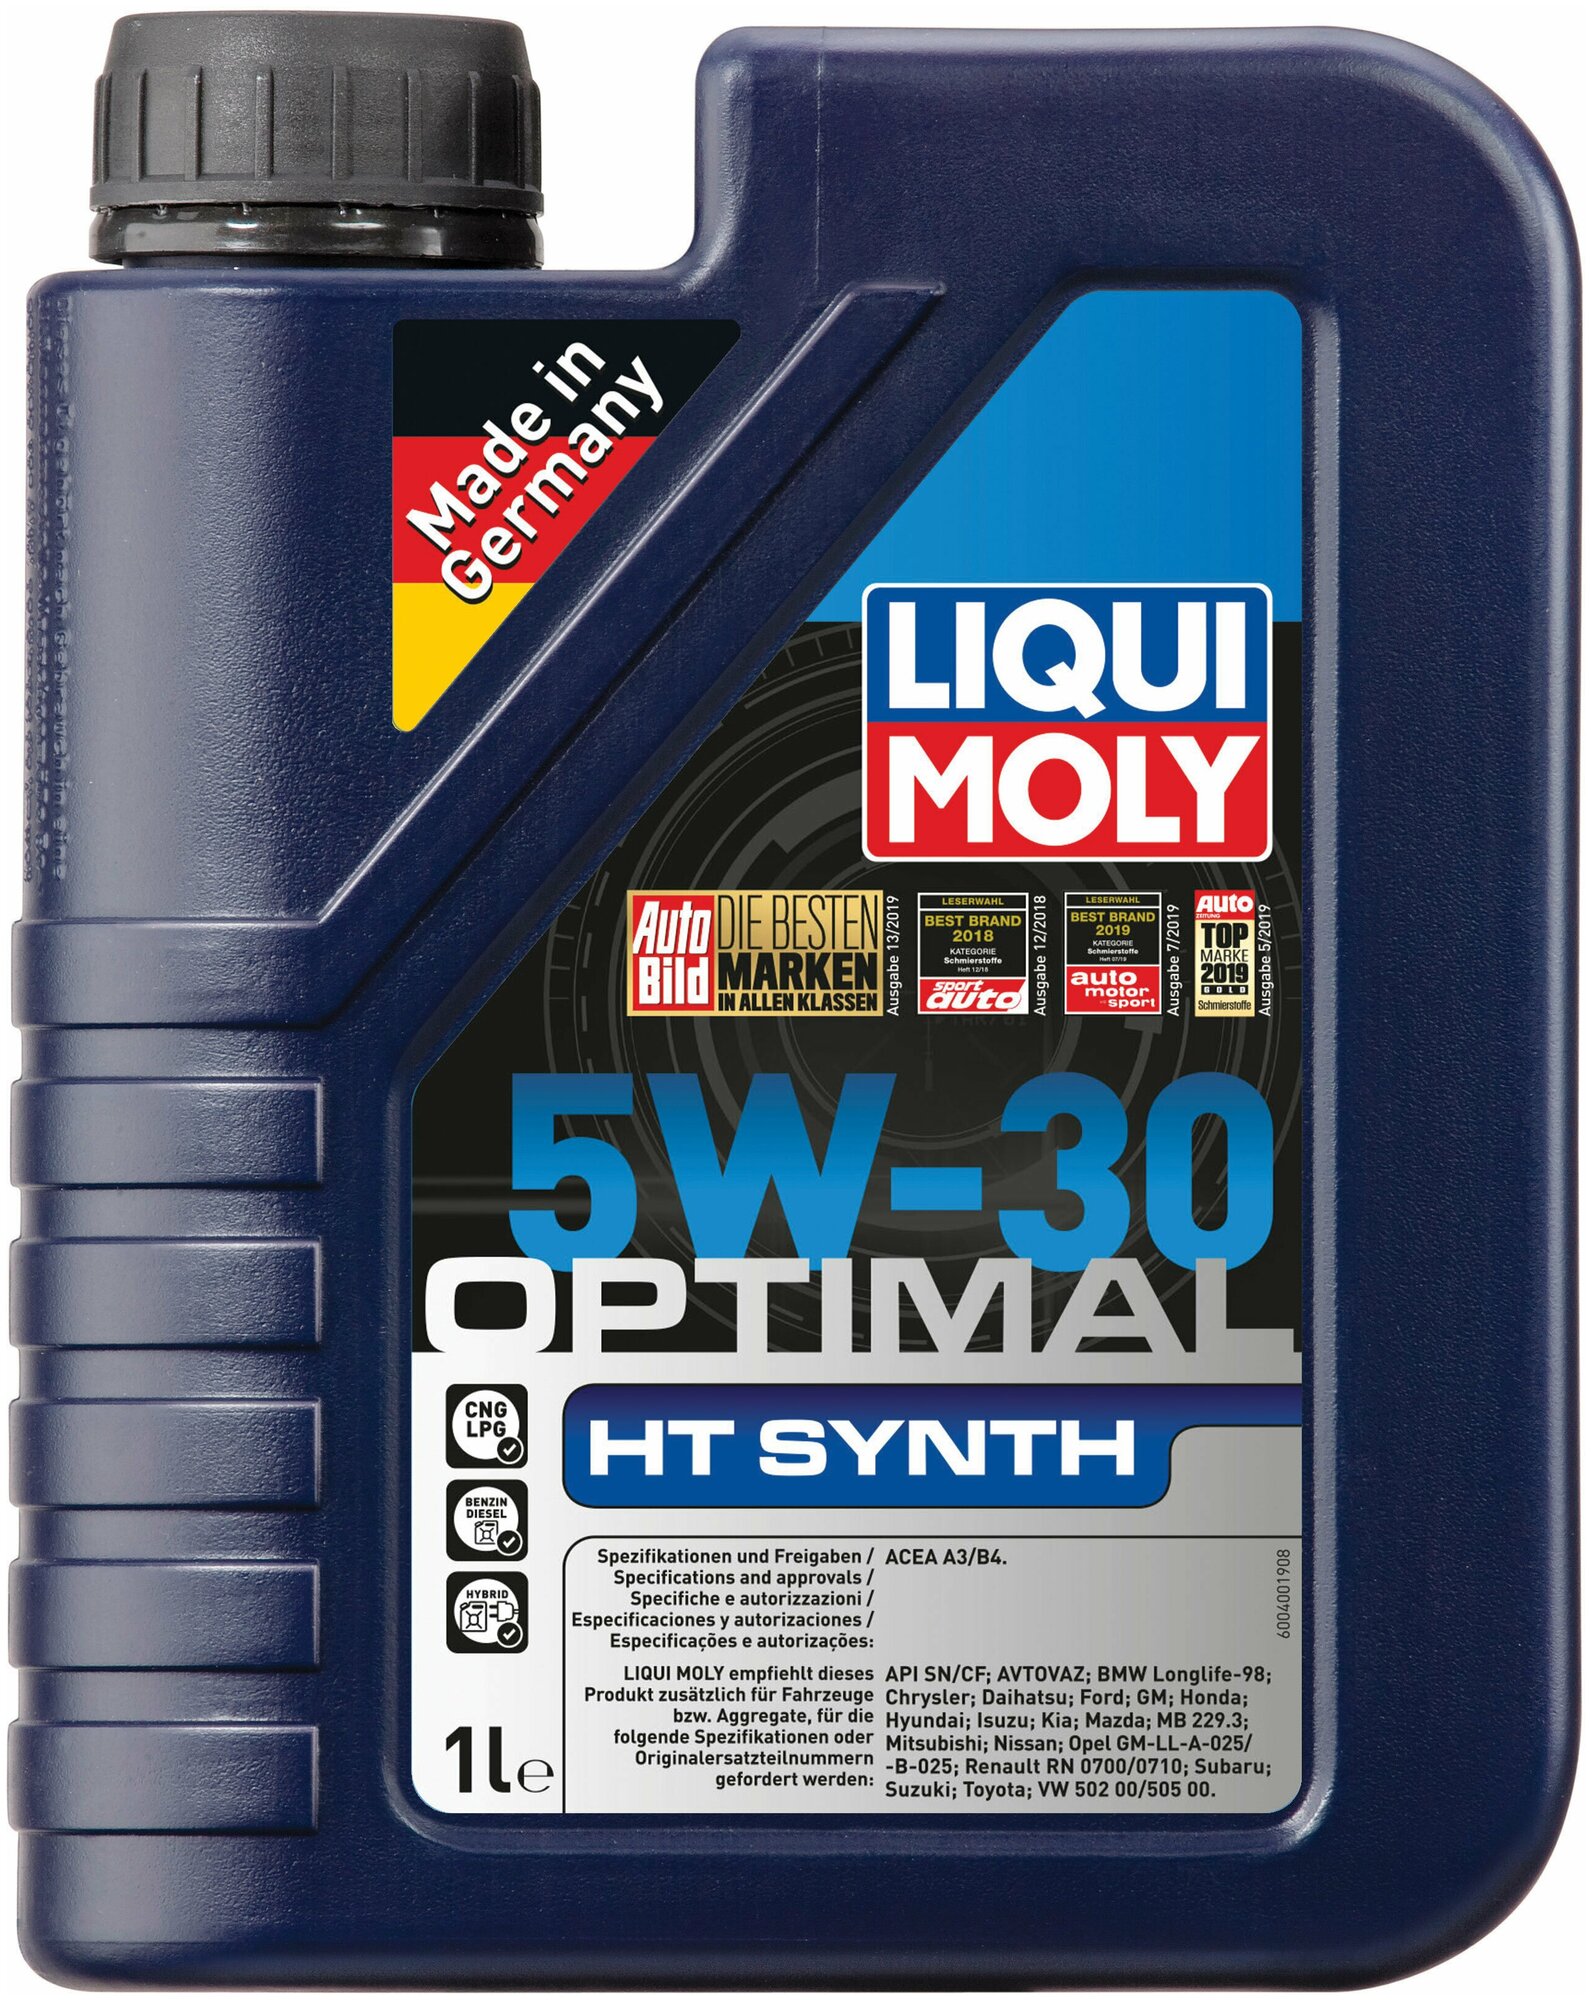 НС-синтетическое моторное масло Liqui Moly Optimal HT Synth 5W30 1л (39000)